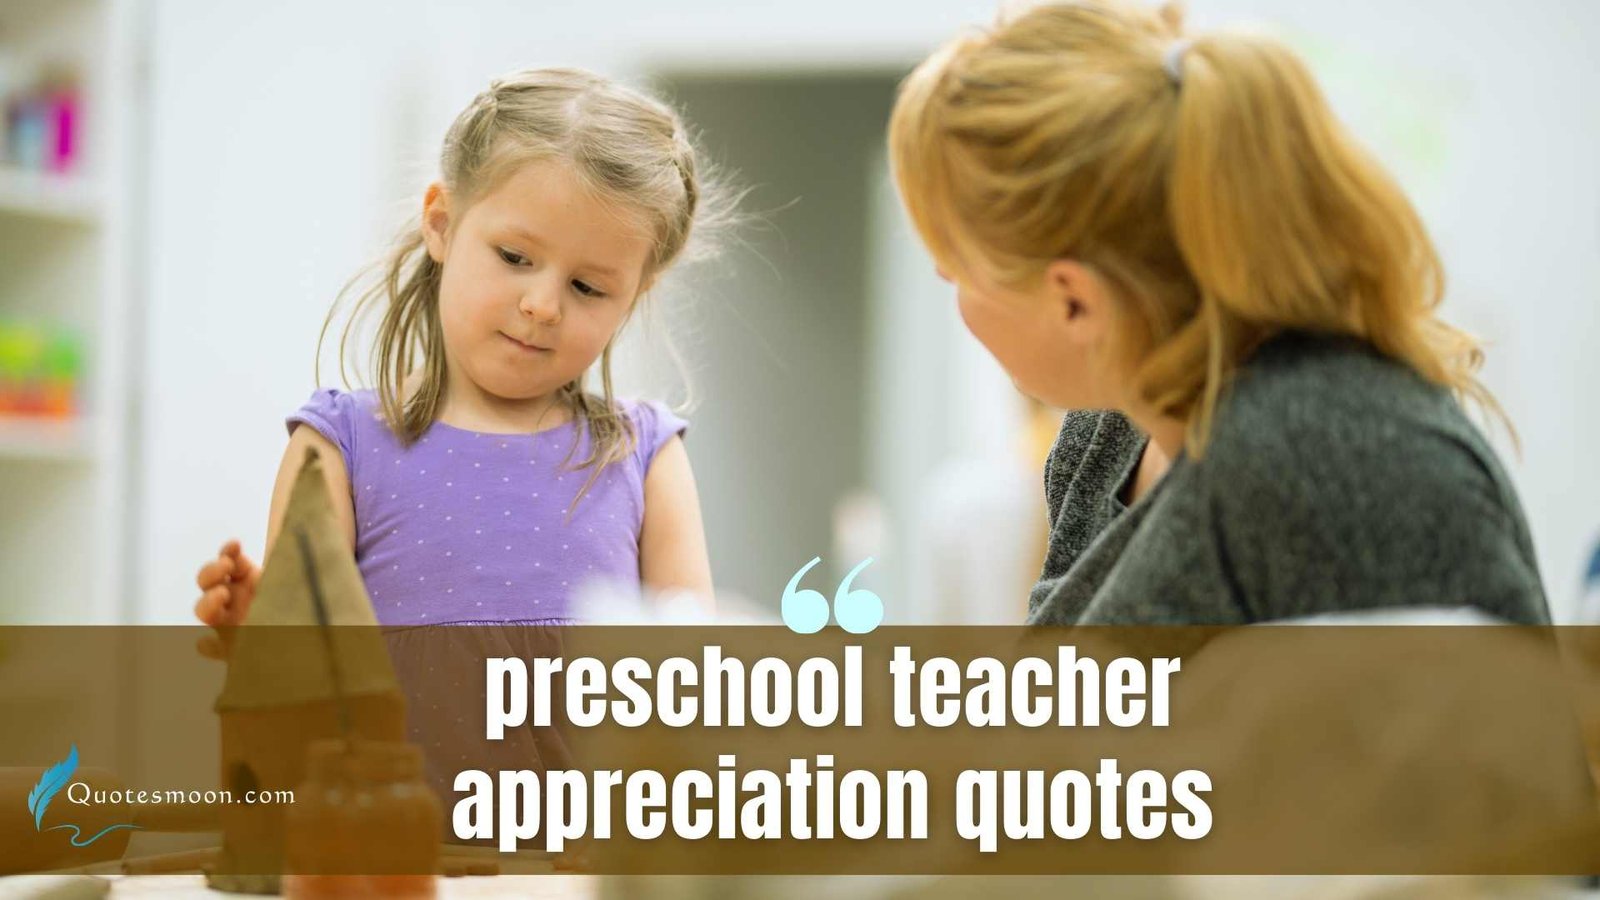 preschool teacher appreciation quotes images